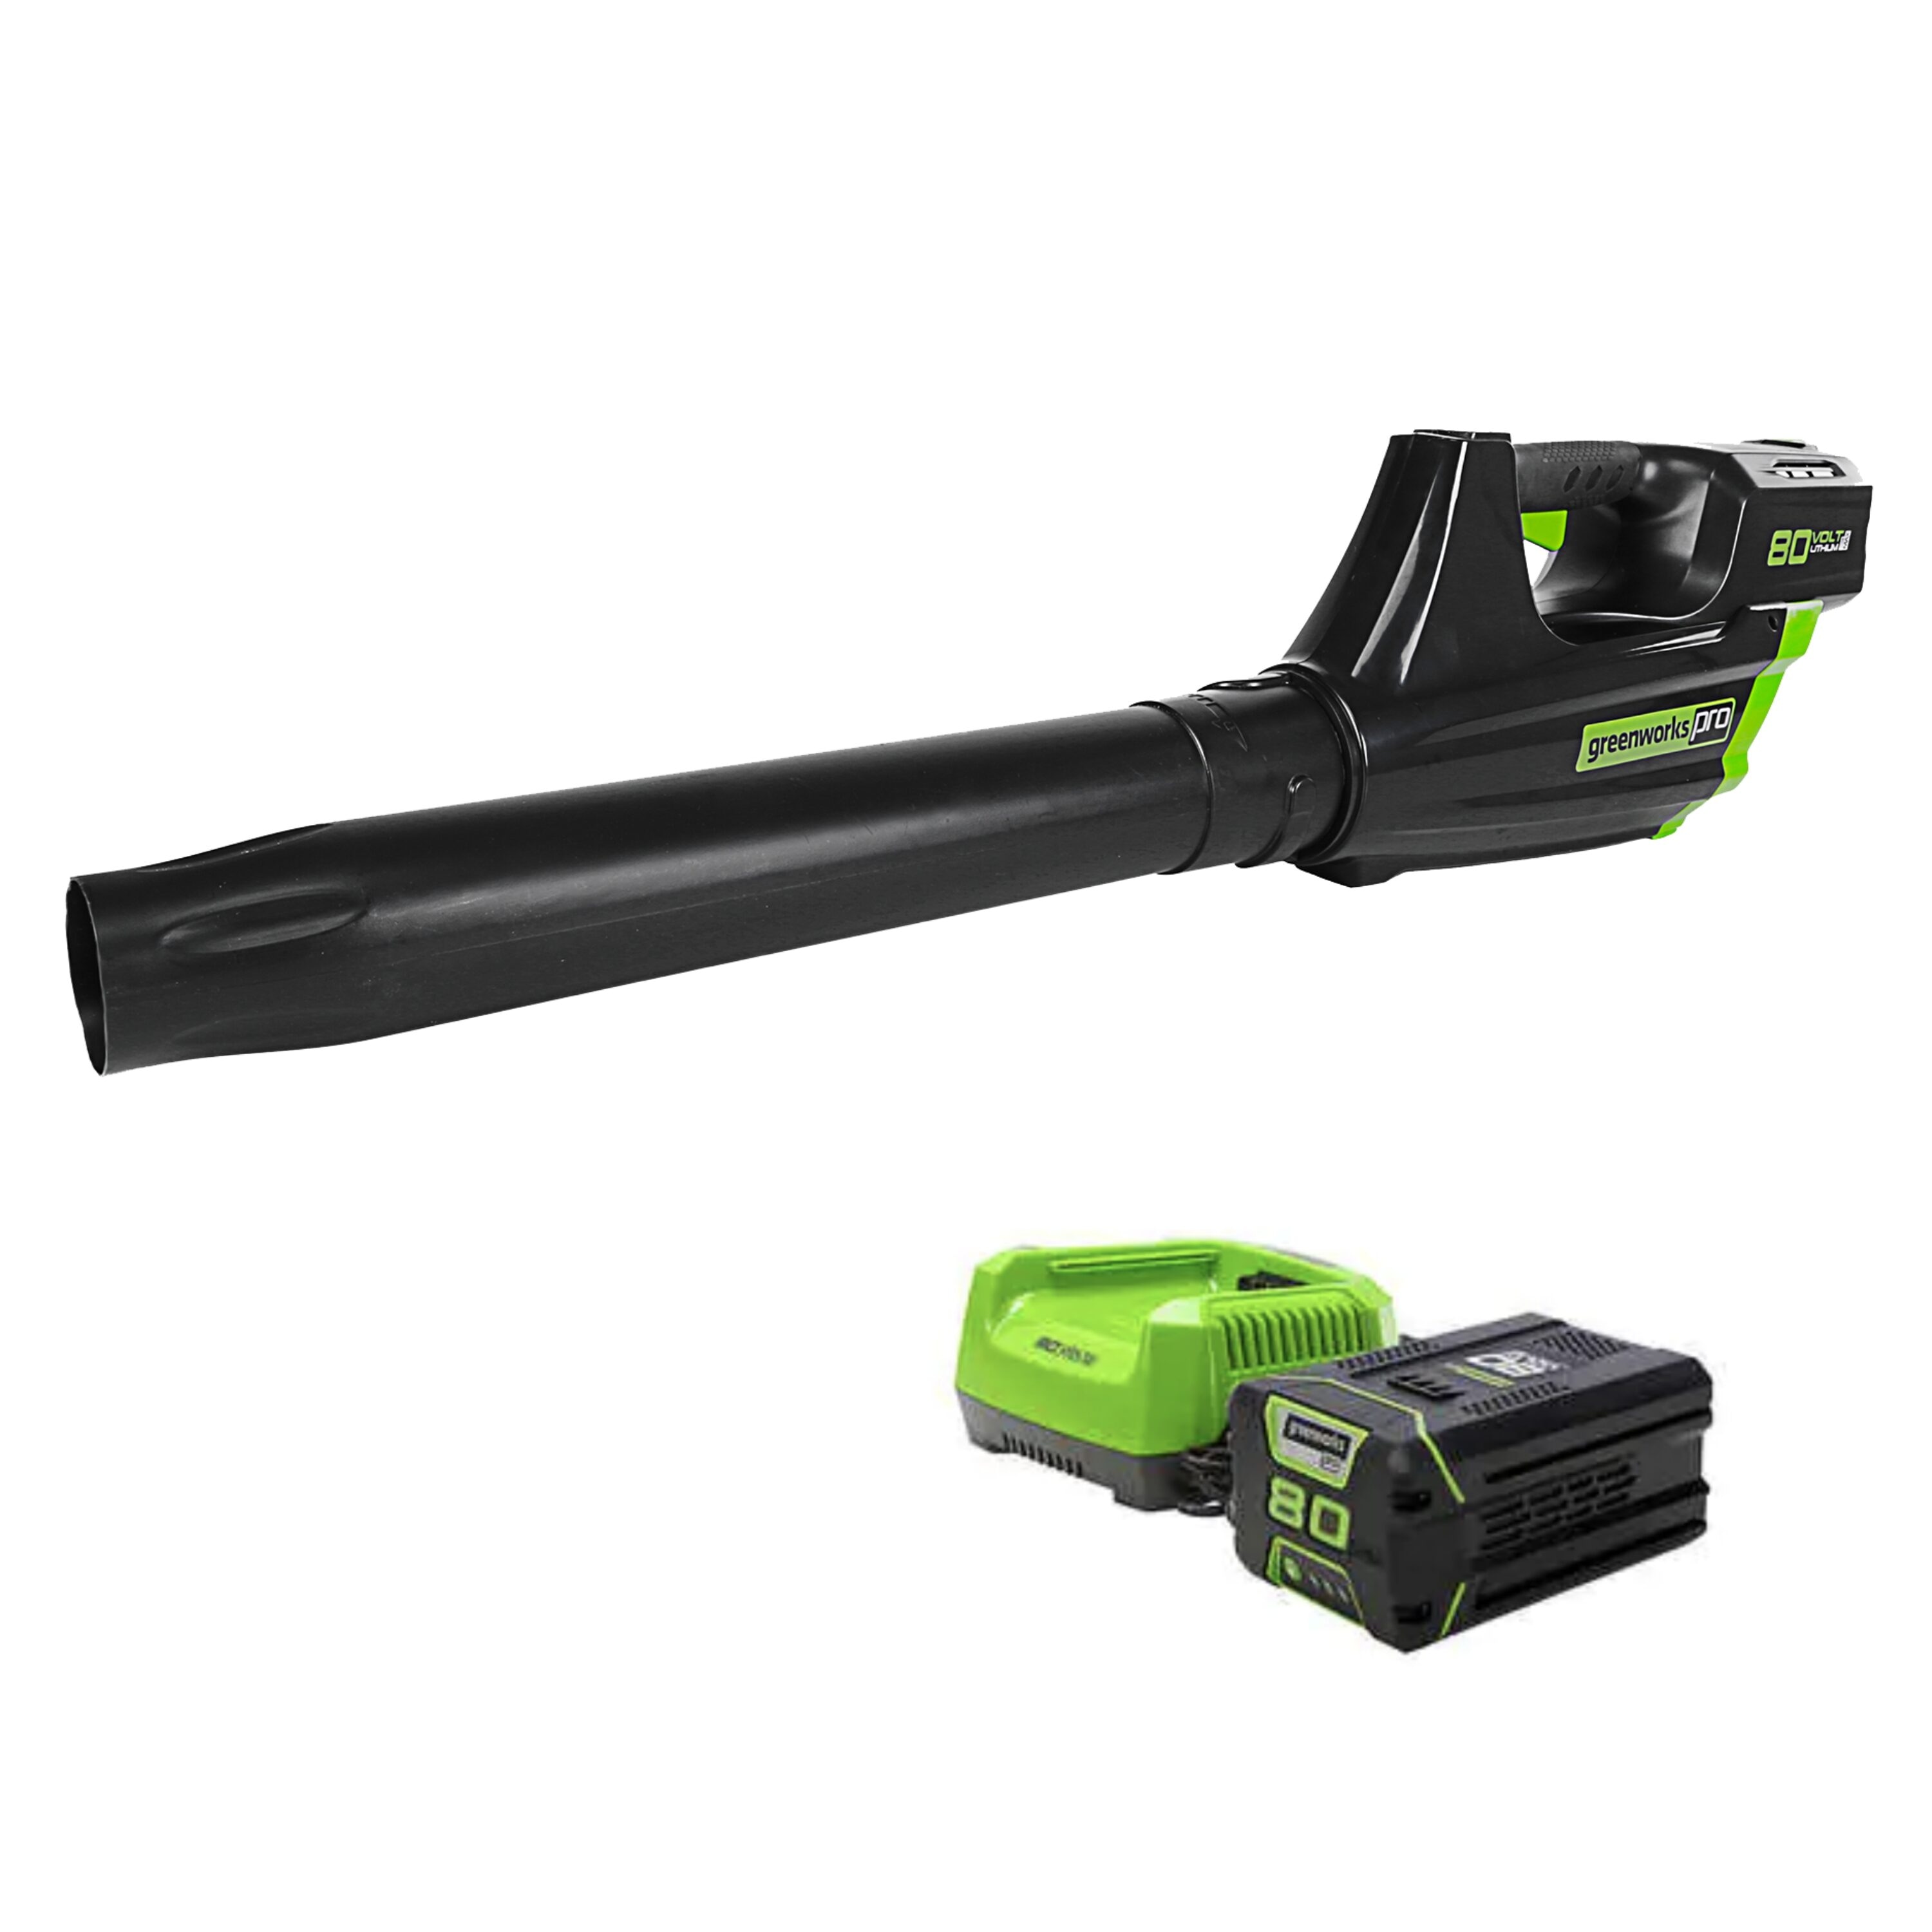 Greenworks 80-volt Max 500-CFM 125-MPH Battery Handheld Leaf